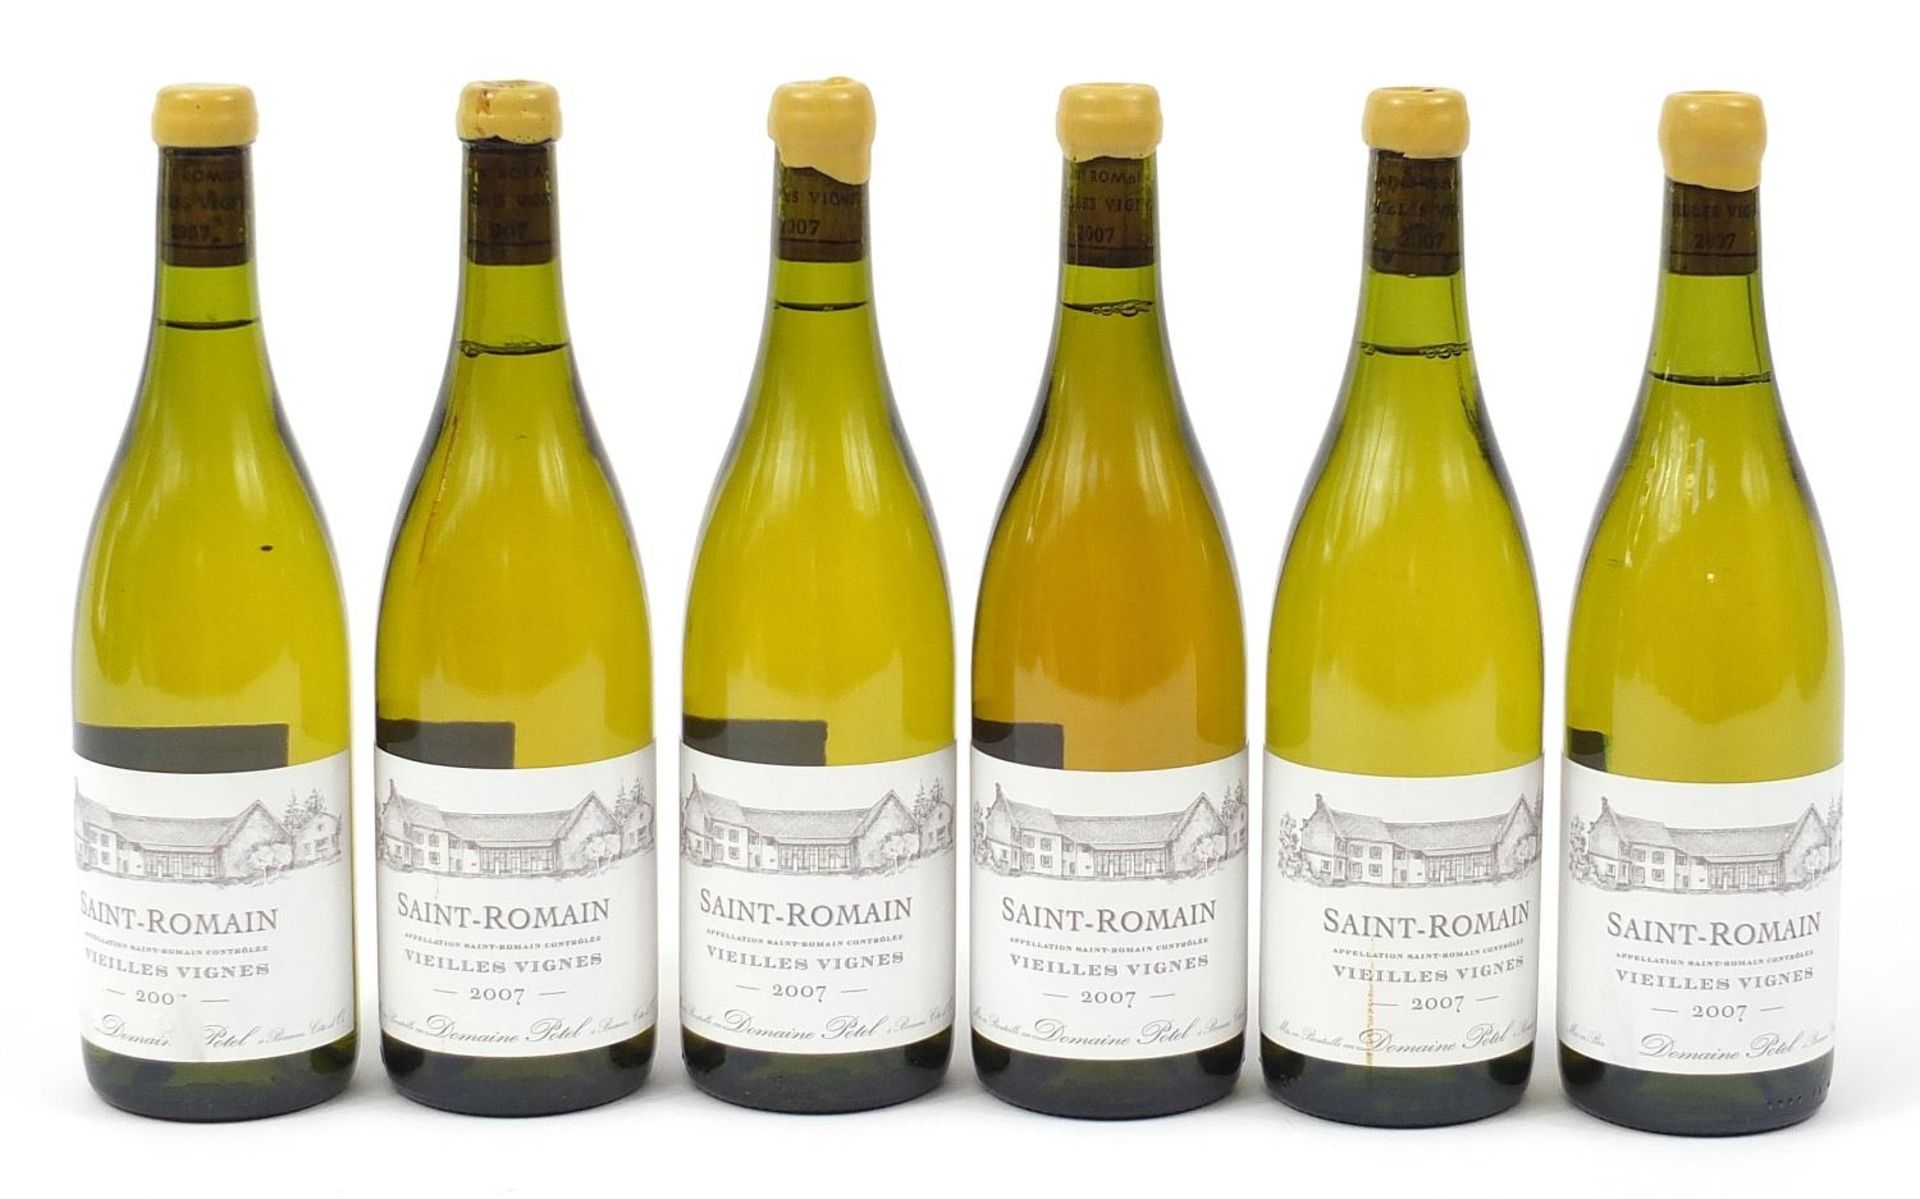 Six bottles of 2007 Domaine Potel Saint Romain Blanc Vieille Vignes